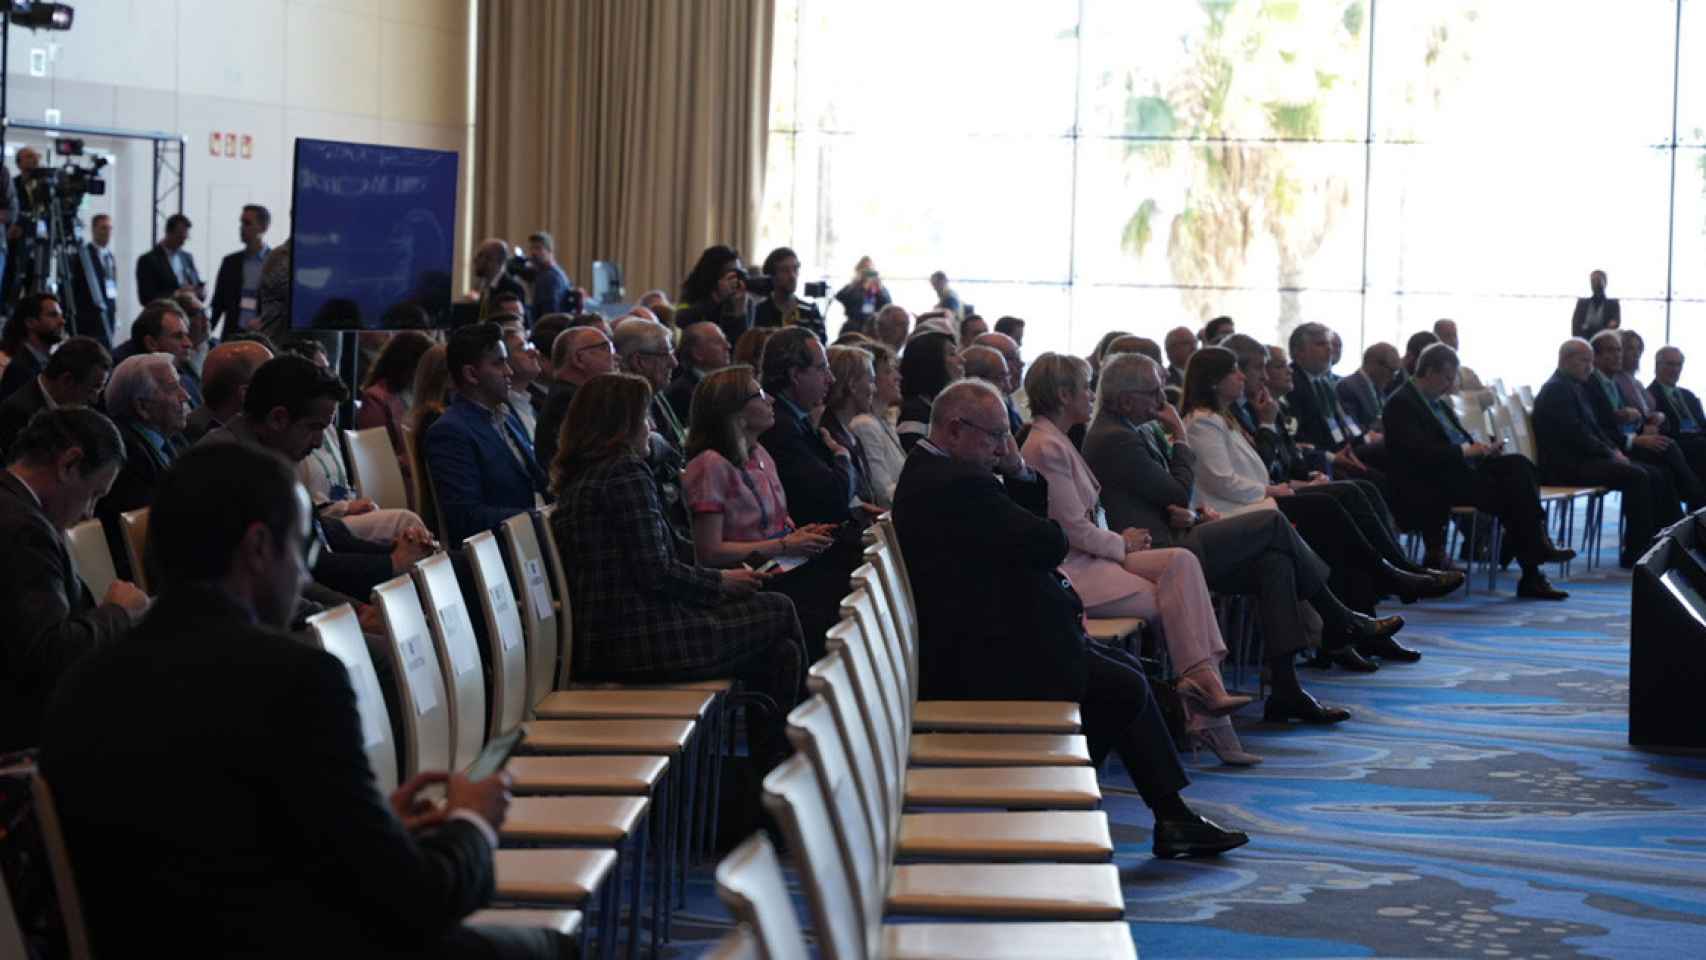 La sala donde se celebra la reunión del Círculo de Economía estaba medio vacía durante la sesión del consejero de Economía, Jaume Giró / Luís Miguel Añón - CG